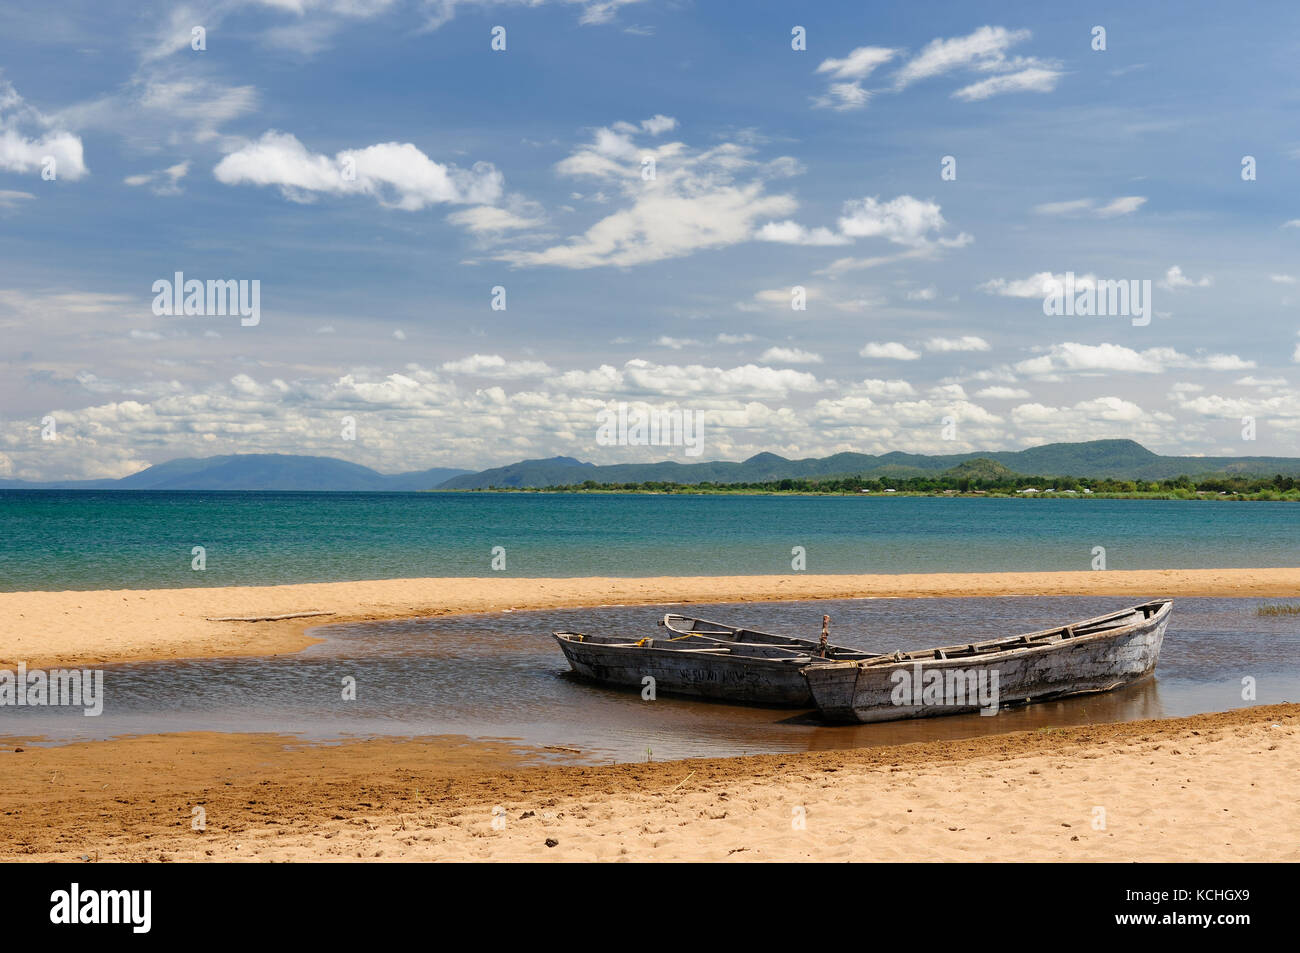 La Tanzanie, le lac Tanganyika est le plus long et le second plus profond lac d'eau douce, c'est aussi l'un des plus anciens lacs de la planète. l'image pr Banque D'Images